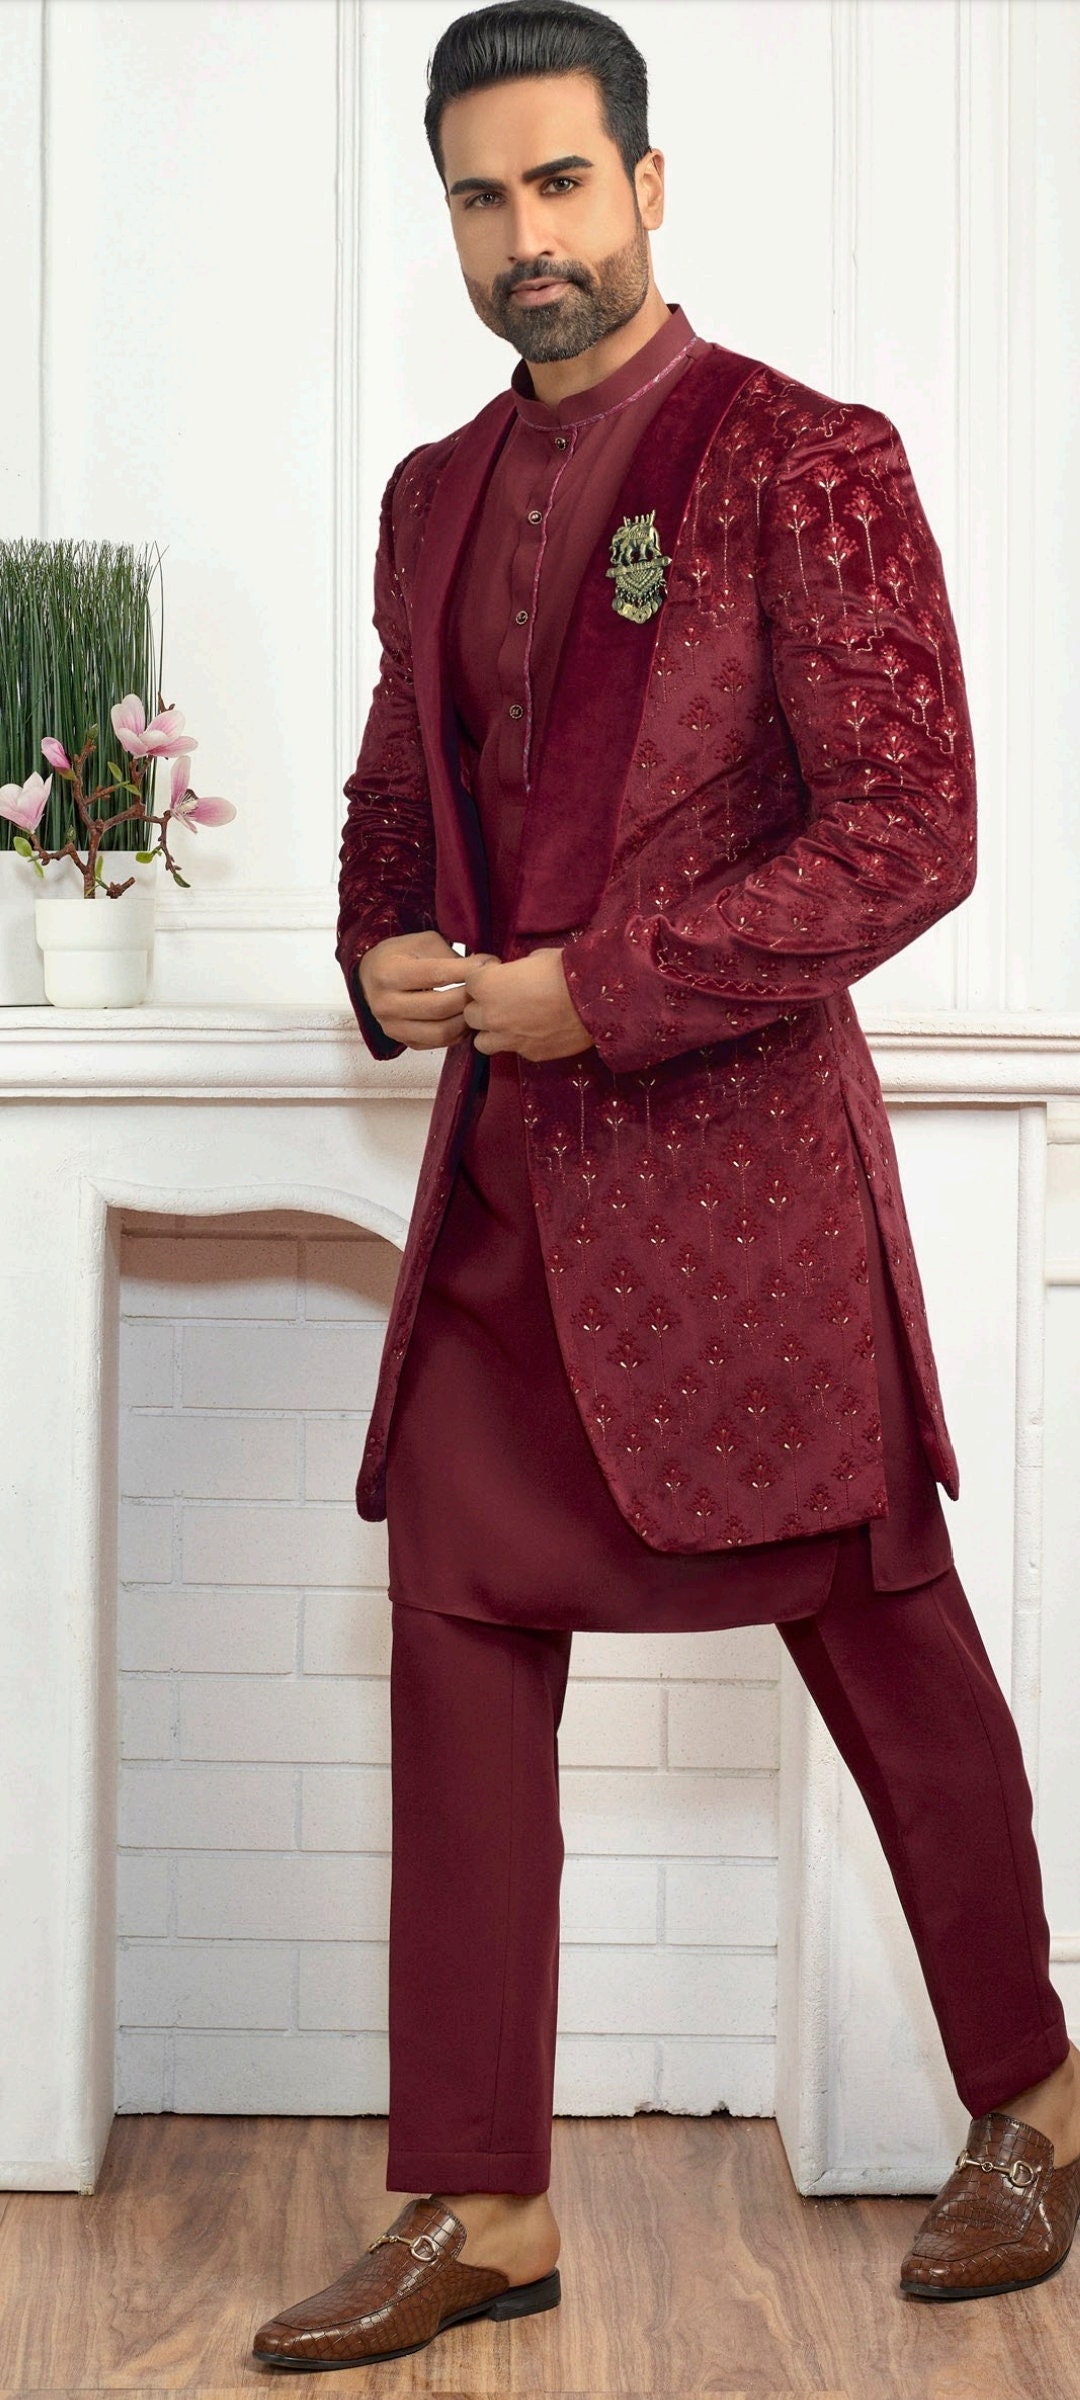 Details more than 207 dulha suit dress latest